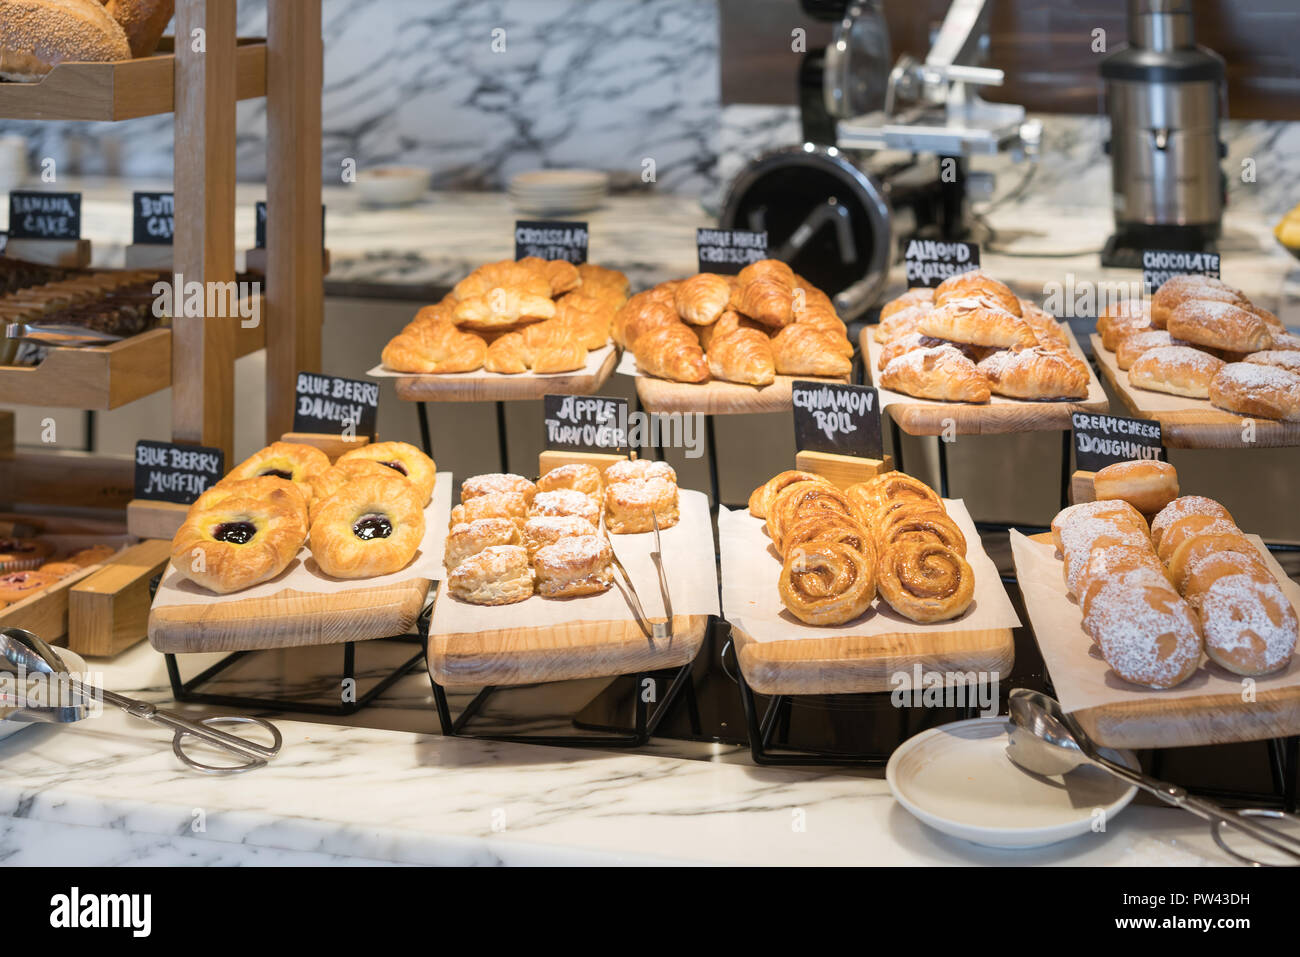 Frühstück Linien unterschiedlicher Geschmack danishs, Brötchen und Muffins in der holztabletts im Hotel Restaurant Stockfoto